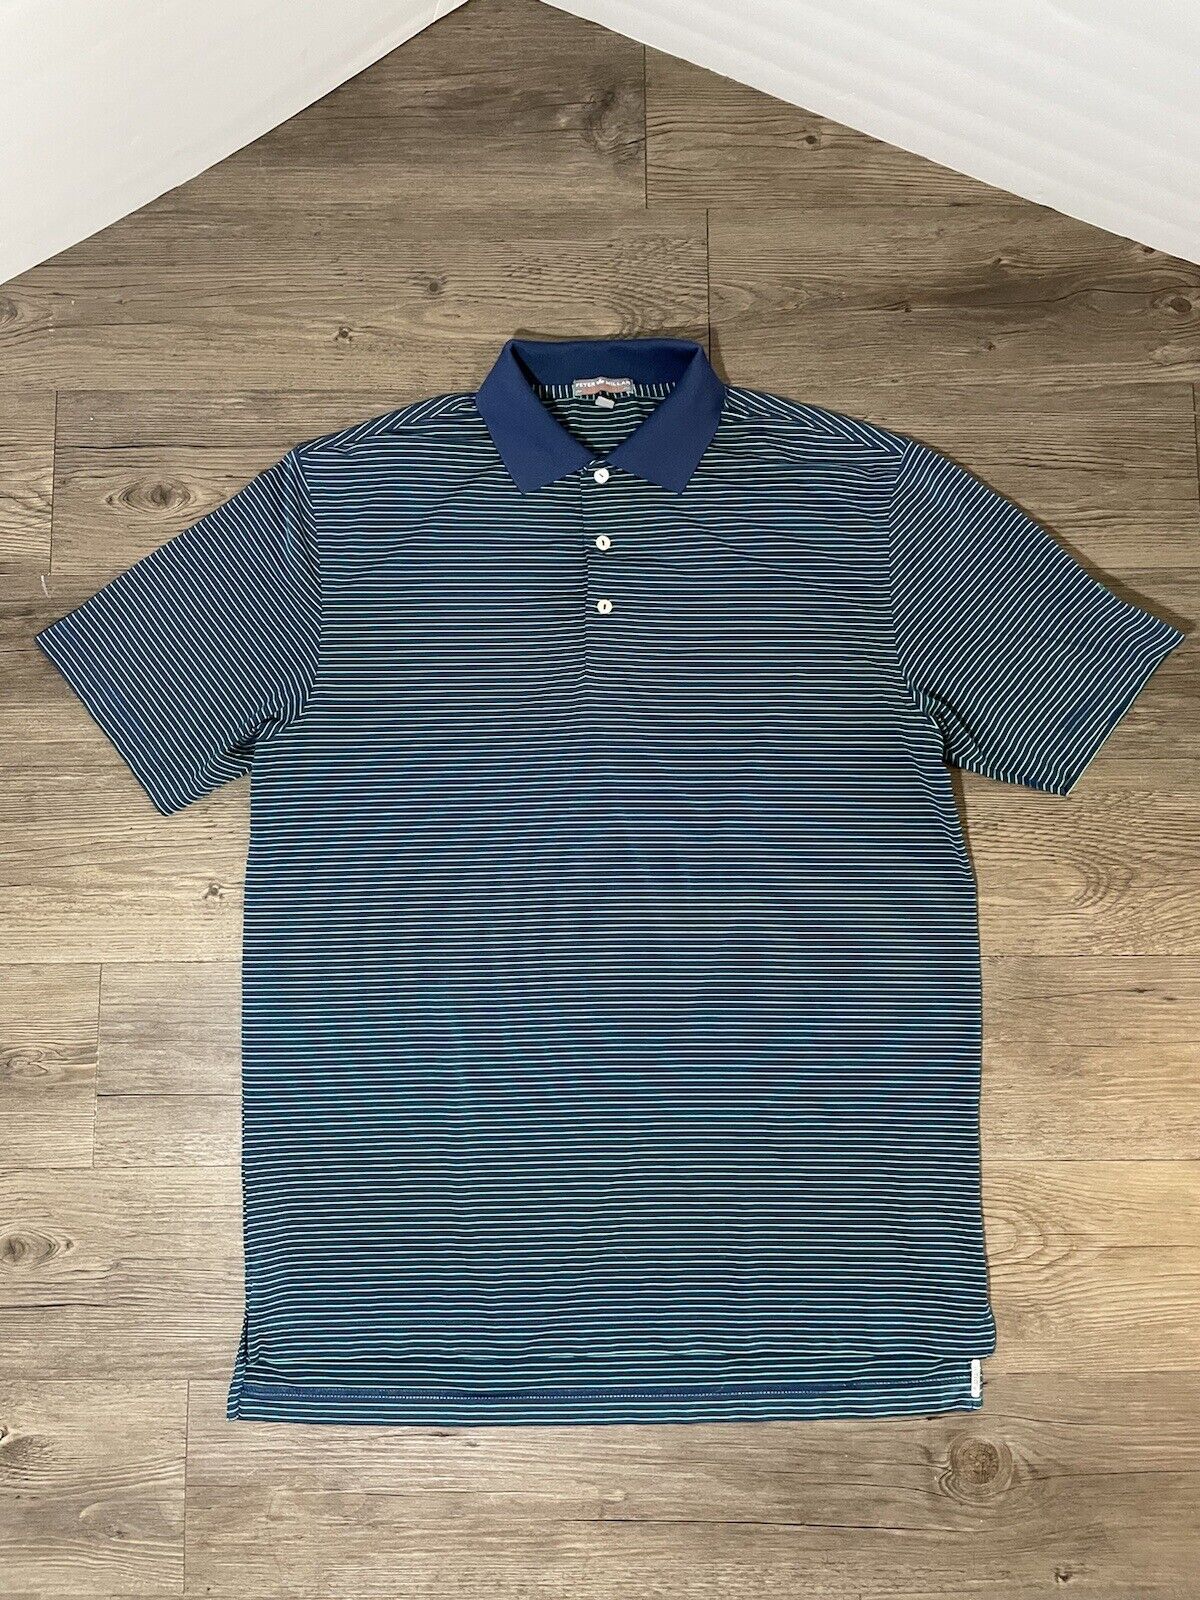 Peter Millar Summer Comfort Golf Polo SS Shirt Navy Green Stripe NC Embroid Sz M